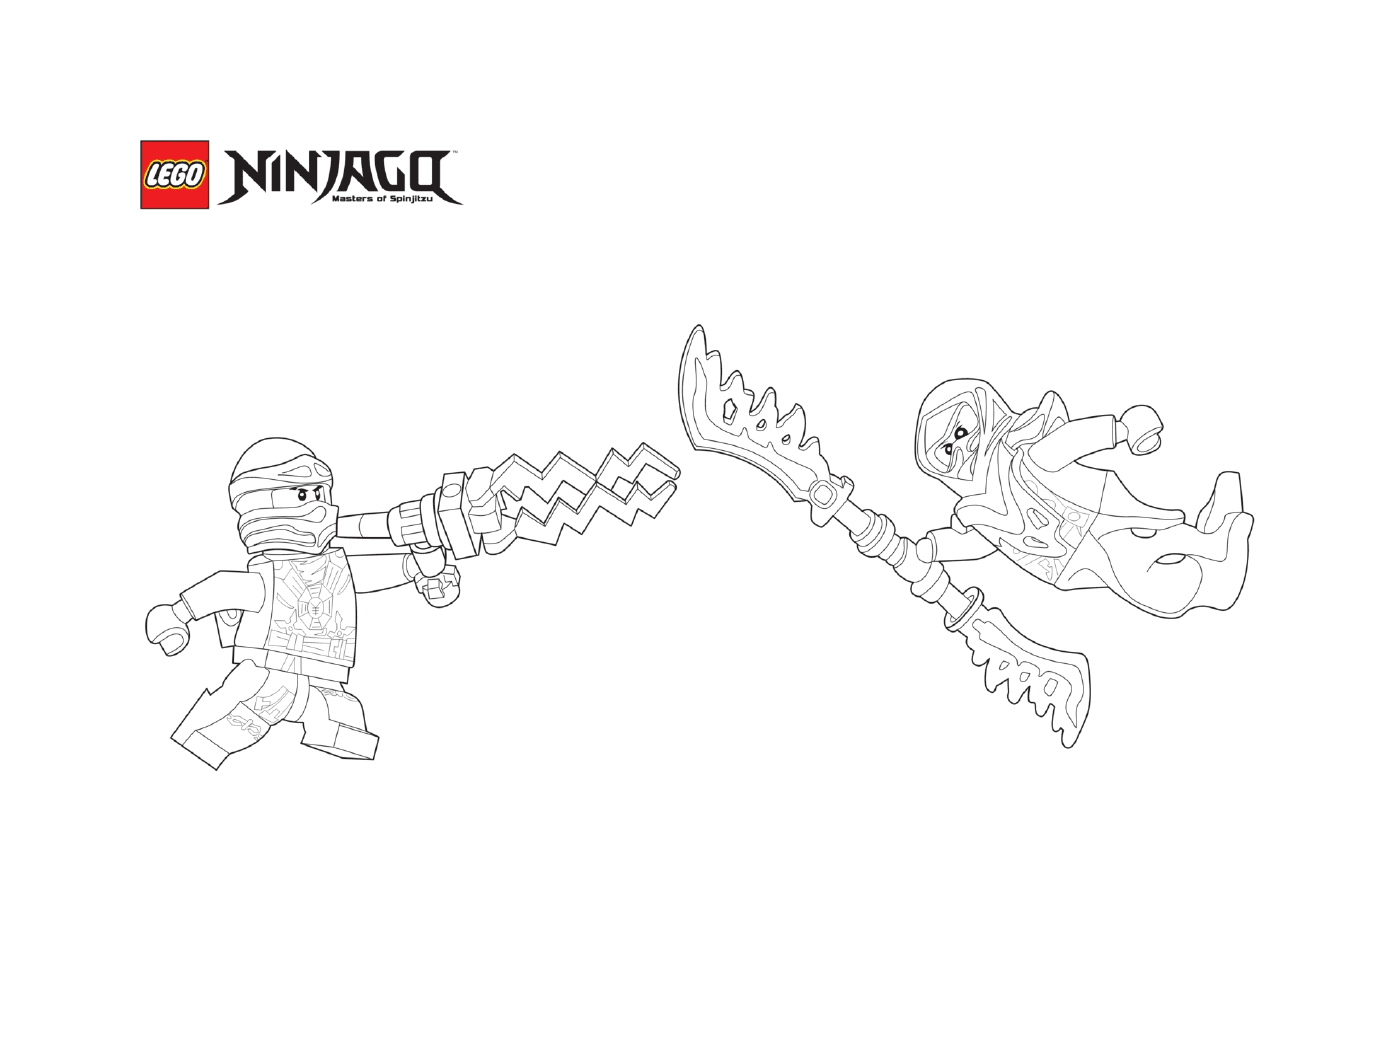  Combat between ninjagos 